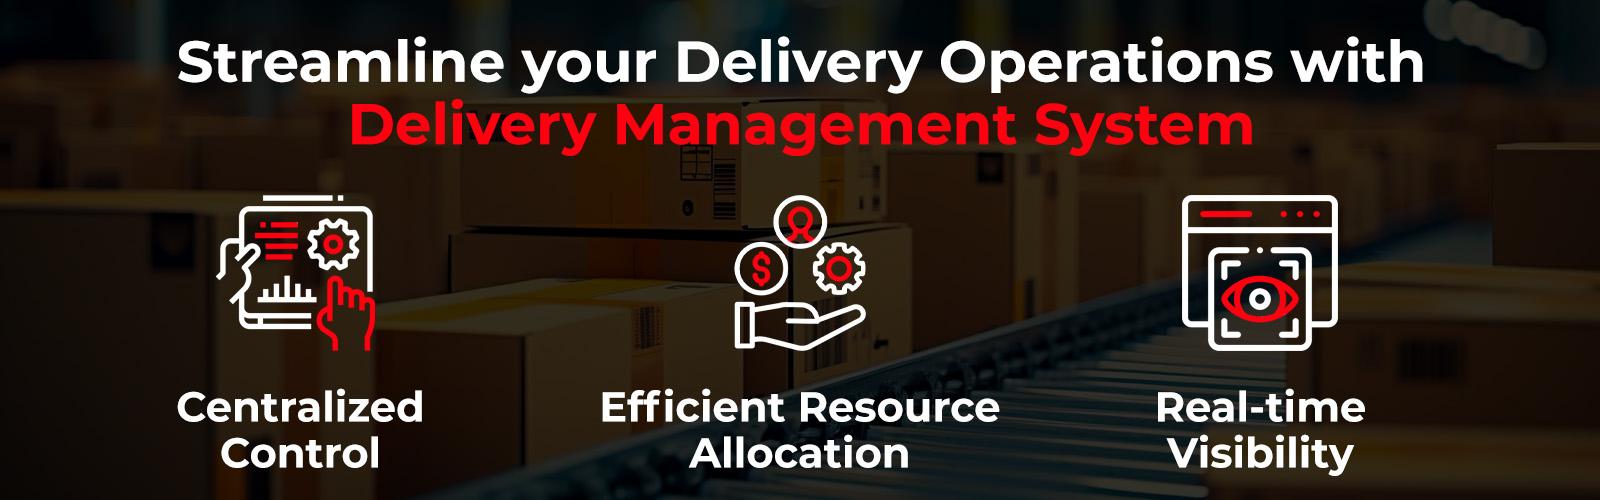 Optimice las operaciones de entrega con el sistema de gestión de entrega